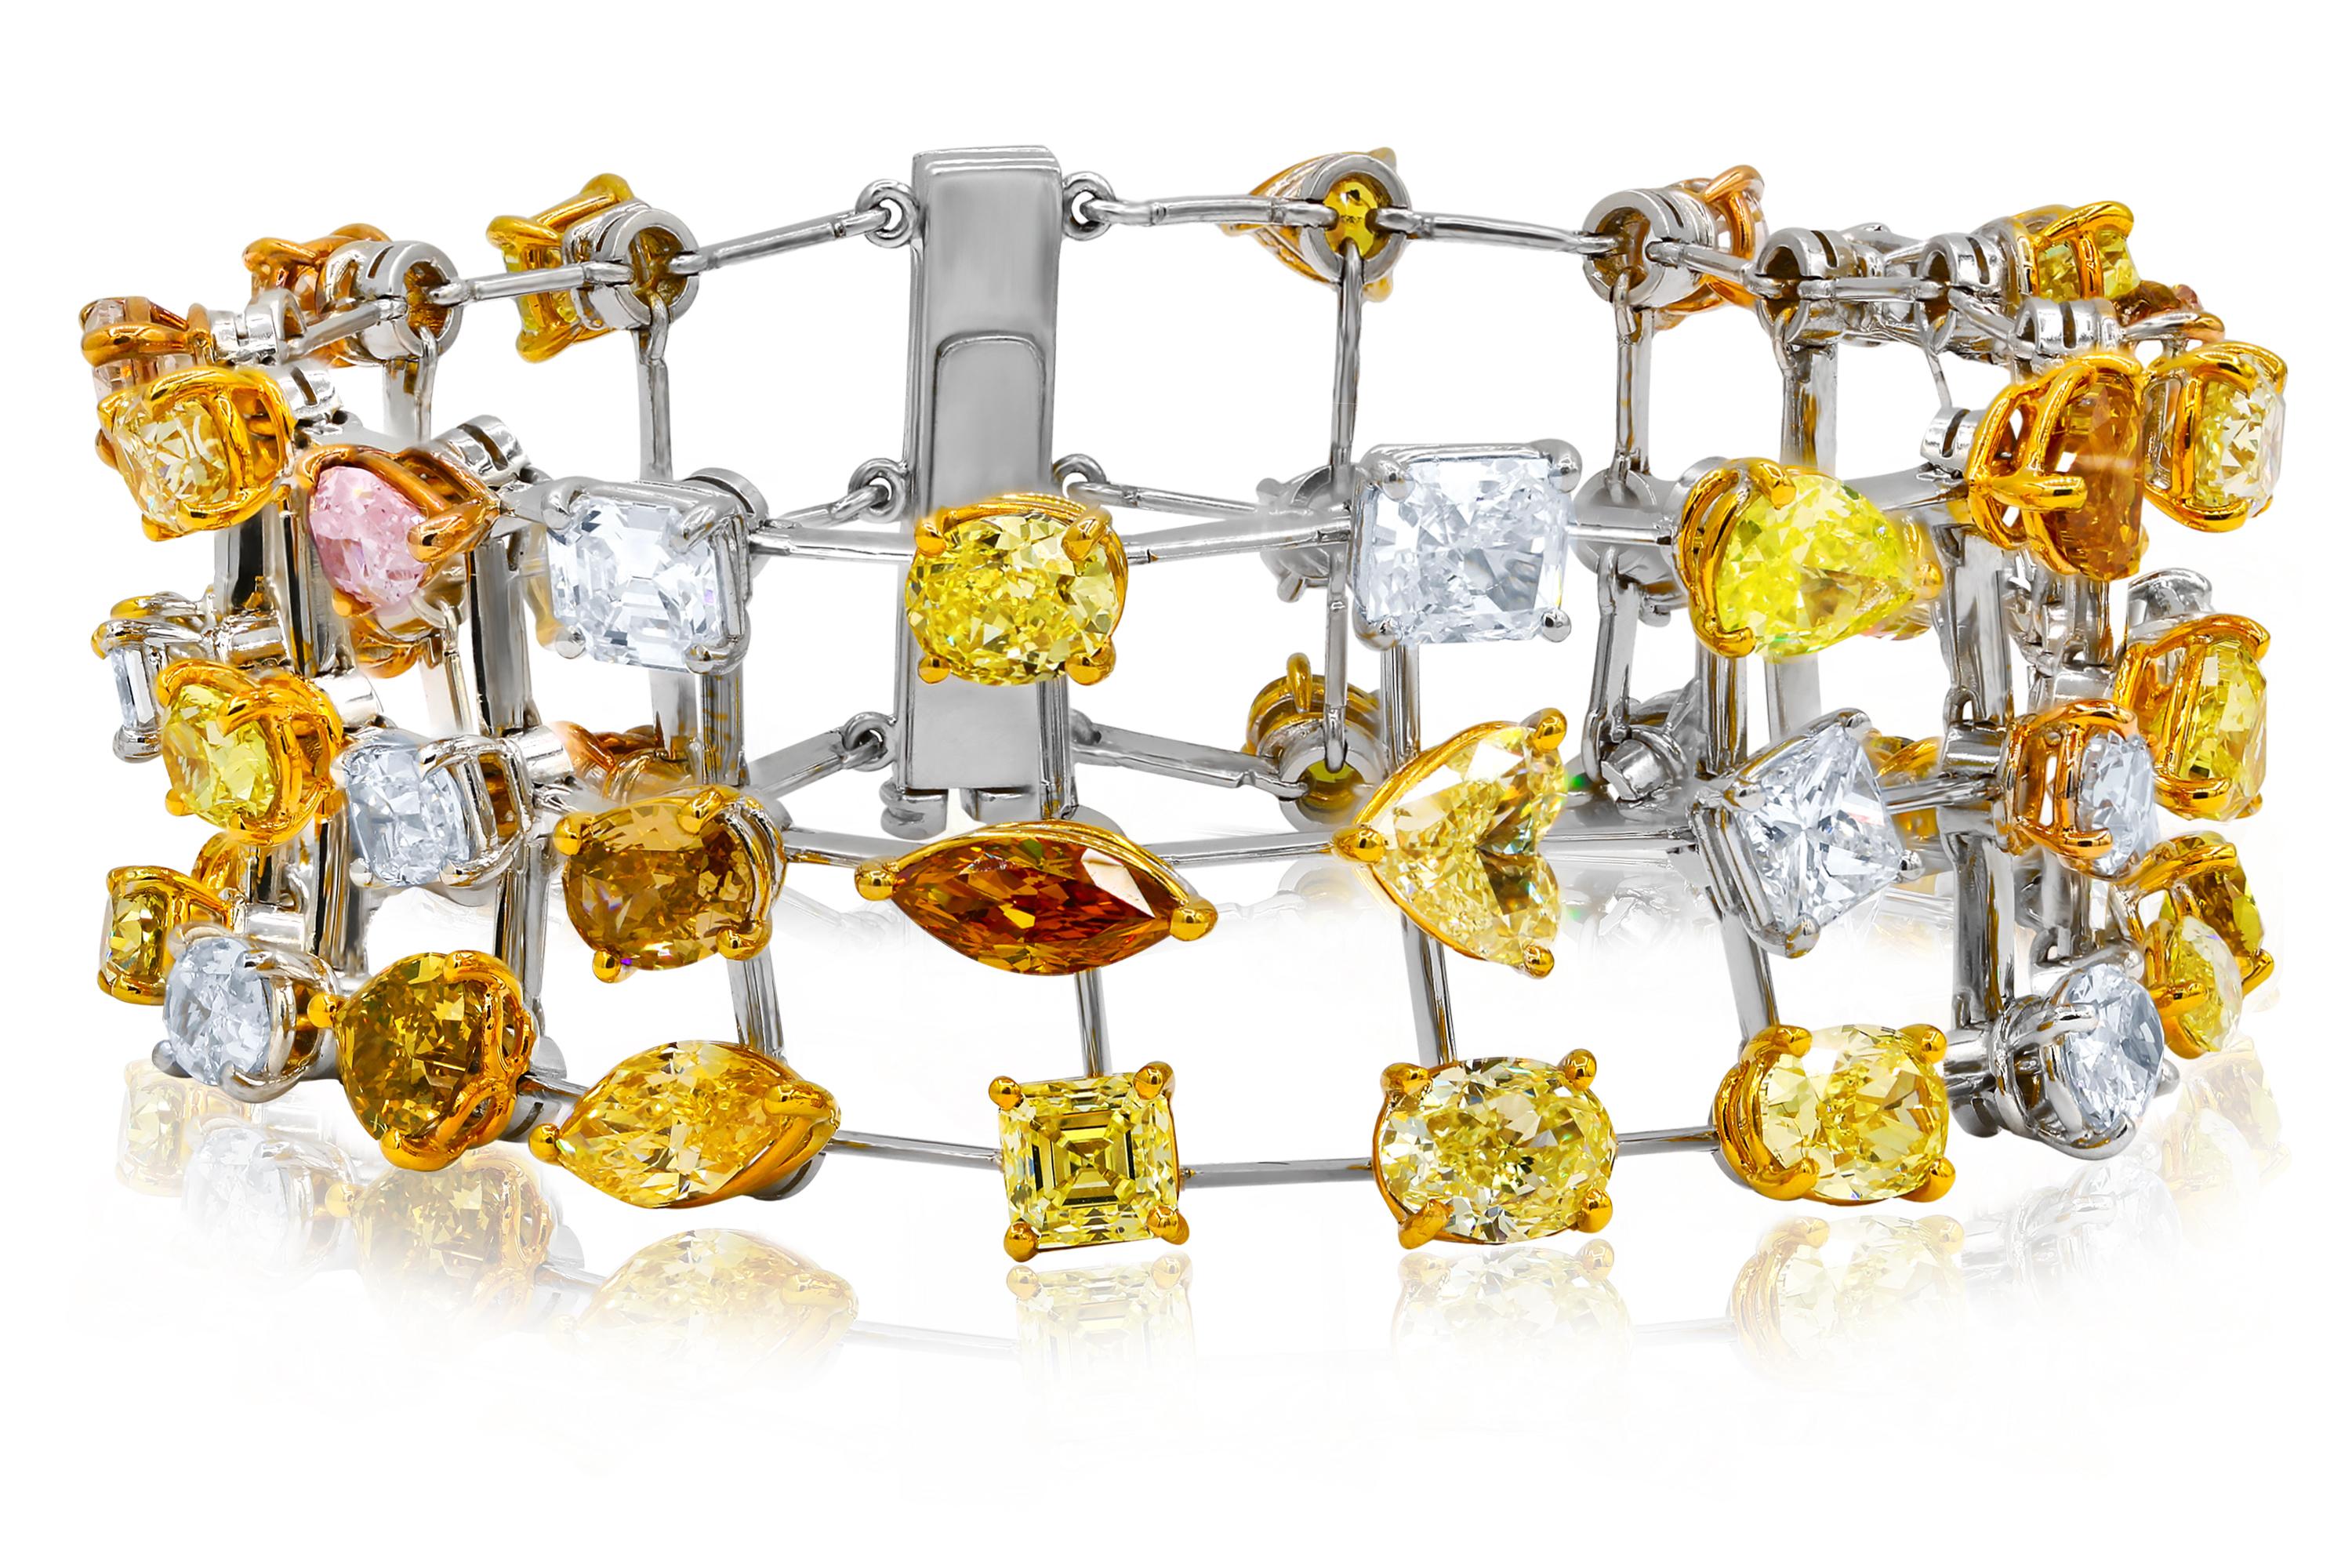 Bracelet à trois rangs de diamants multicolores et multiformes, totalisant 38,00 carats de diamants, monté en platine et en or 18 carats. Combinaison de diamants roses, jaunes, blancs et bruns. 
A&M est un fournisseur de premier plan de bijoux fins